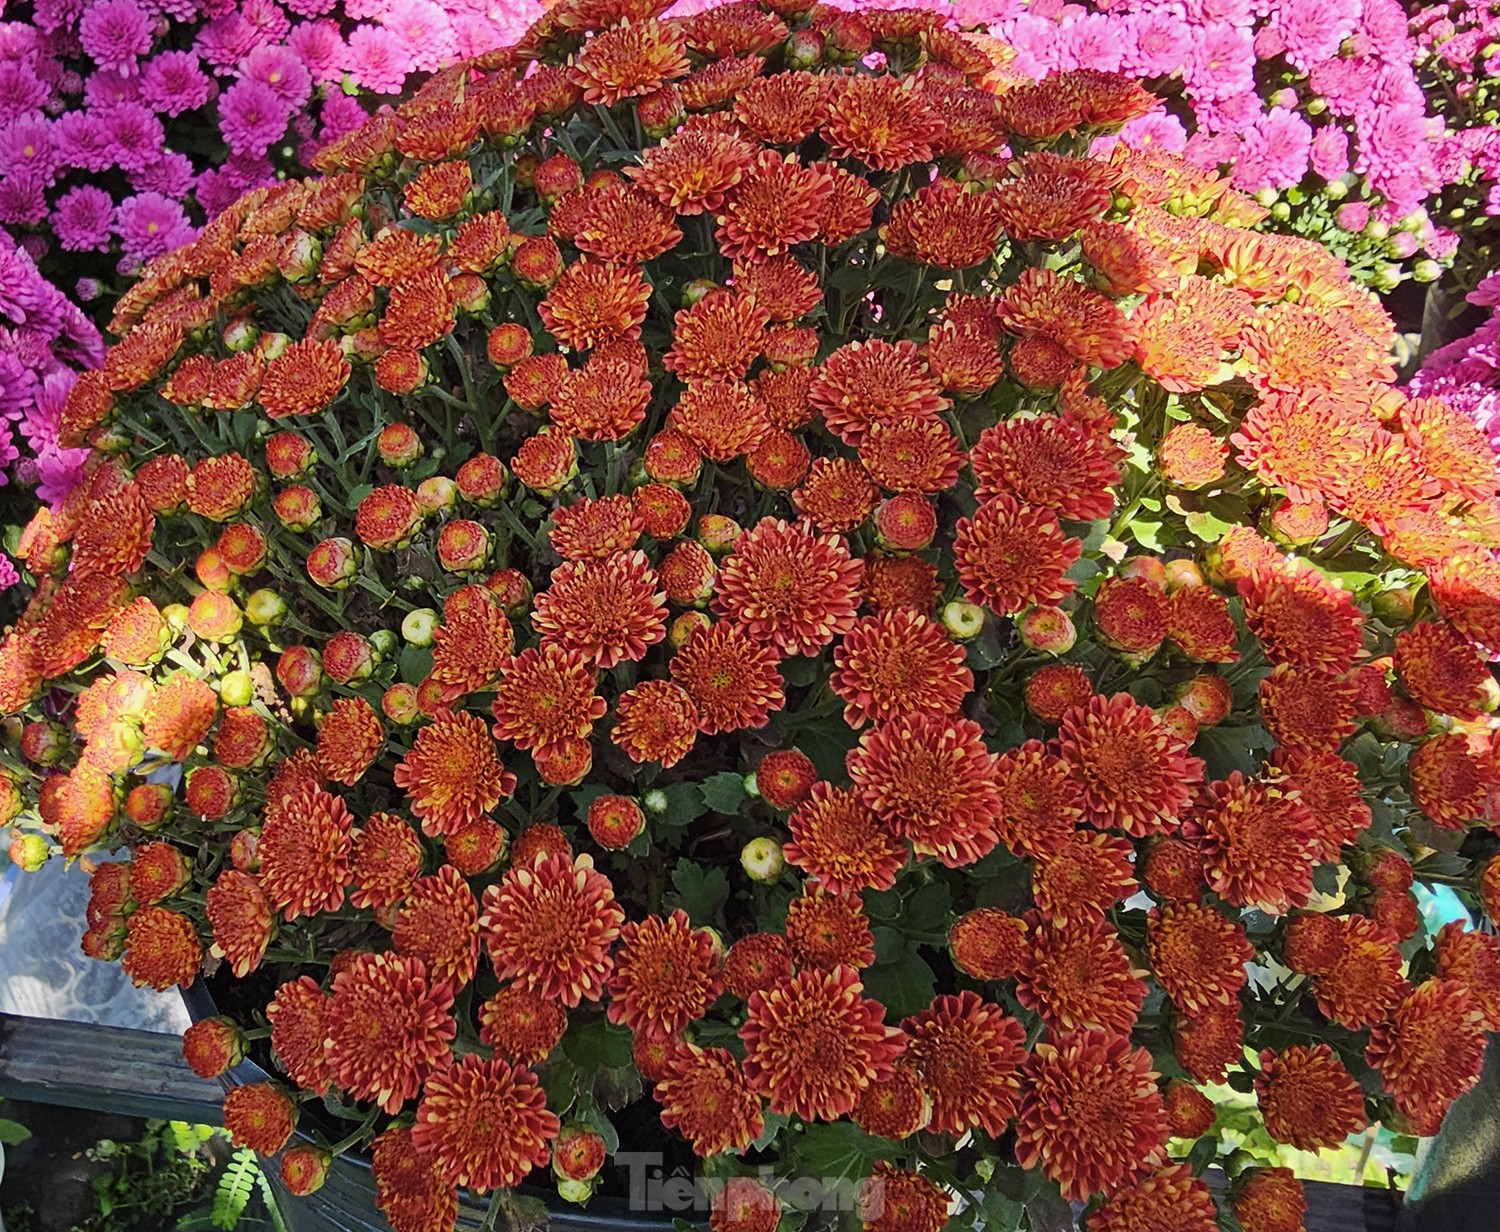 Cúc ngũ sắc lần đầu xuất hiện ở làng hoa lớn nhất miền Tây - Ảnh 6.